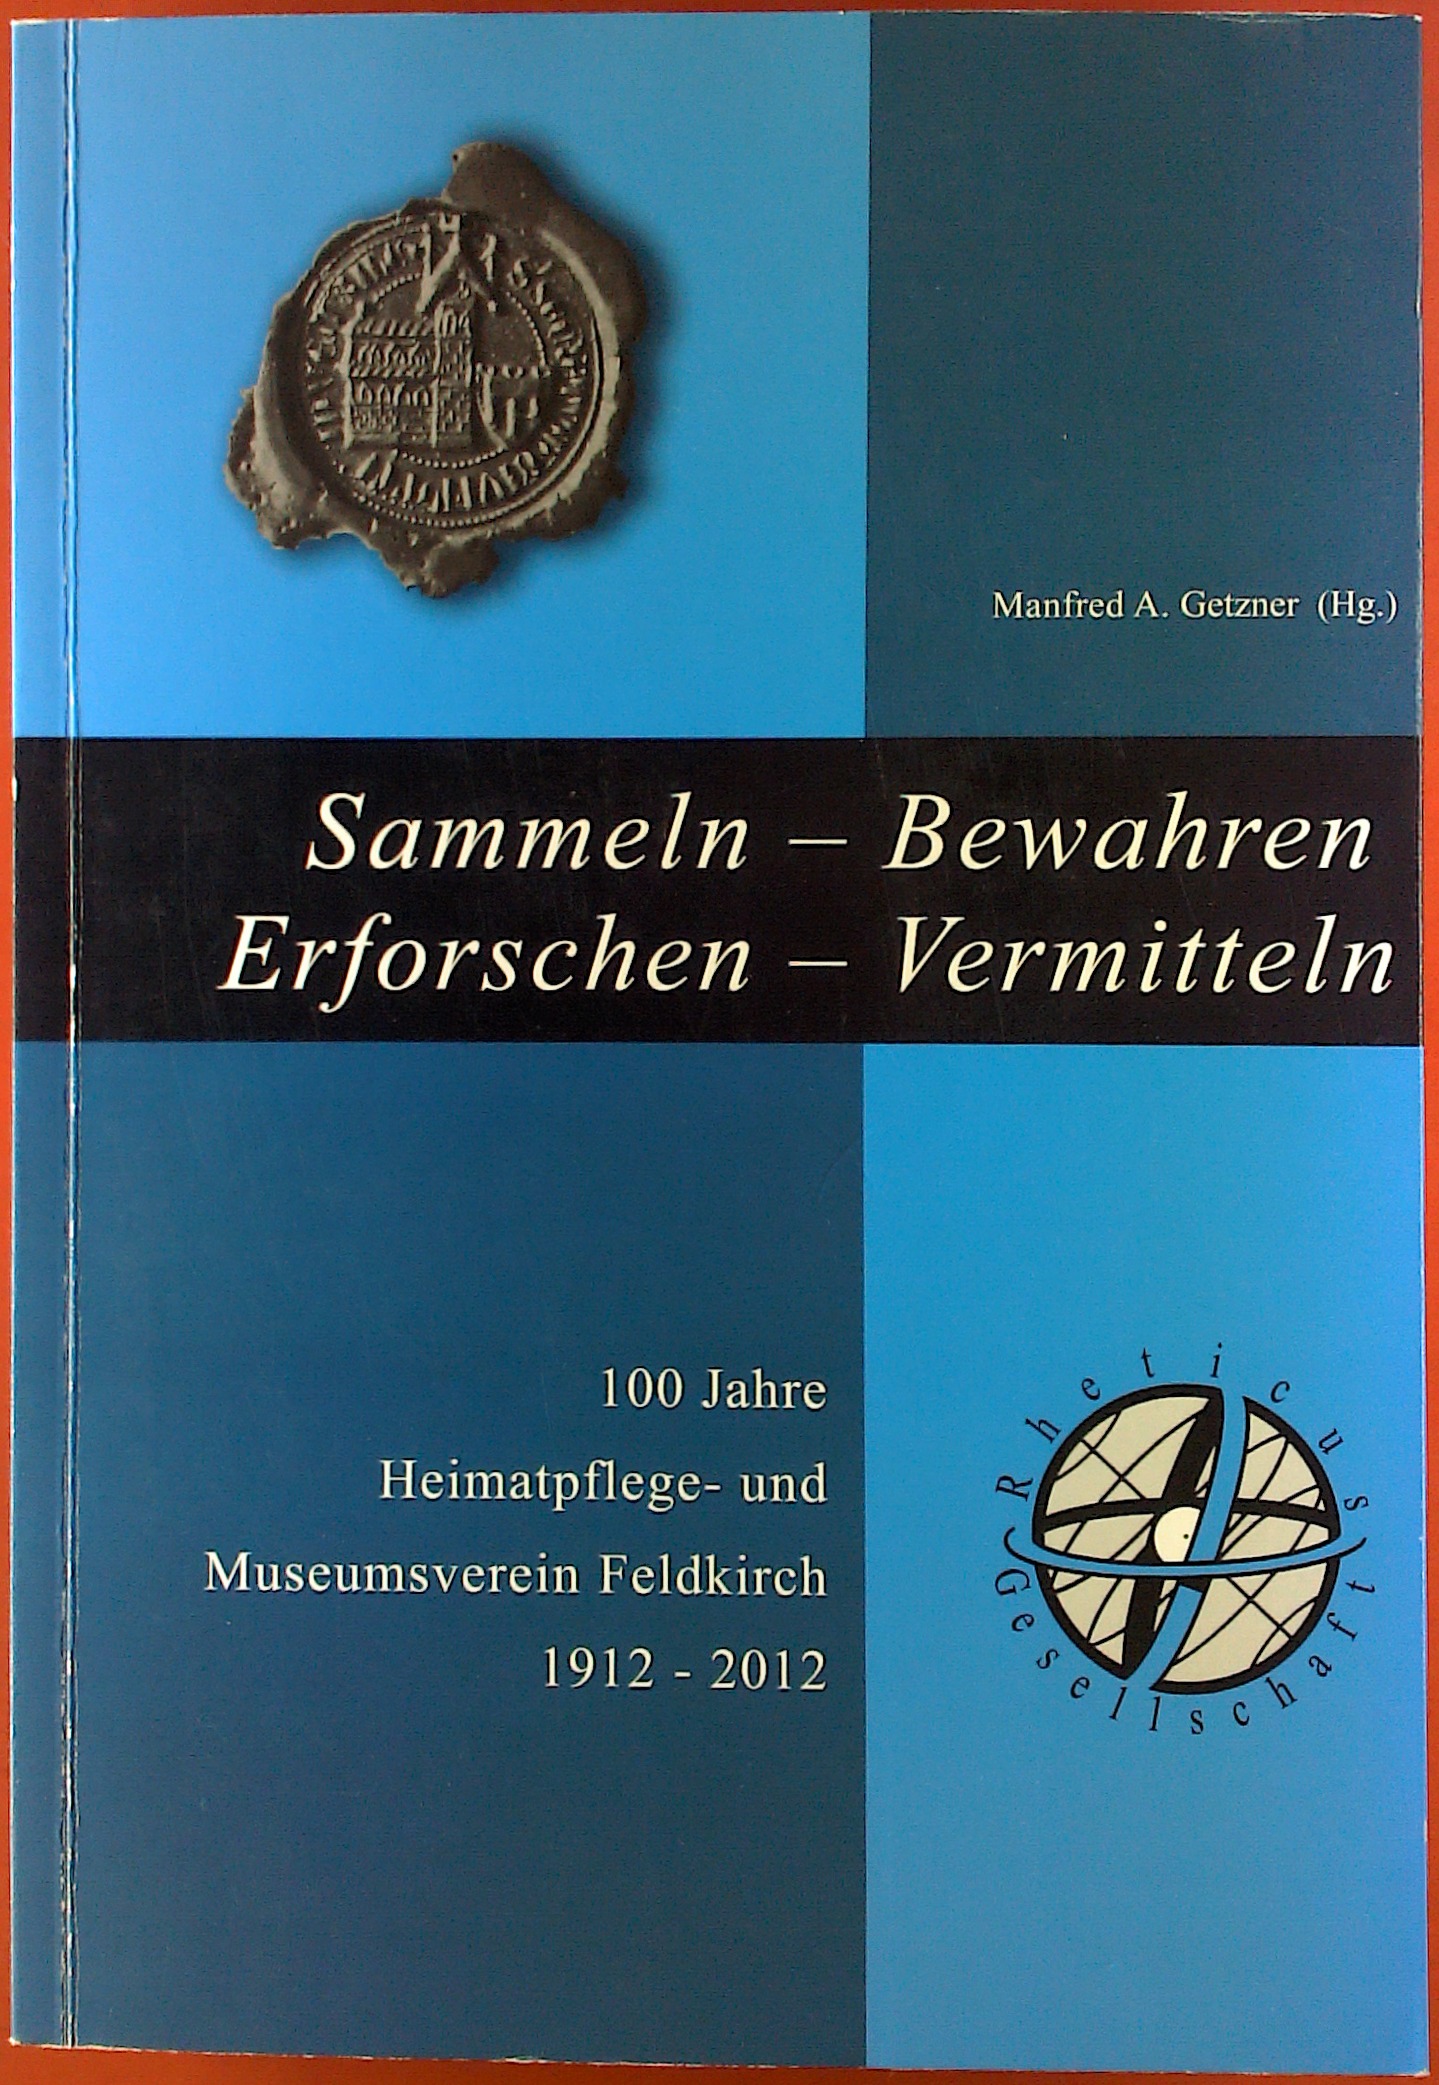 Sammeln-Bewahren-Erforschen-Vermitteln. 100 Jahre Heimatpflege- und Museumsverein Feldkirch. 1912-2012: Schriftenreihe der Rheticus-Gesellschaft Nr. 56